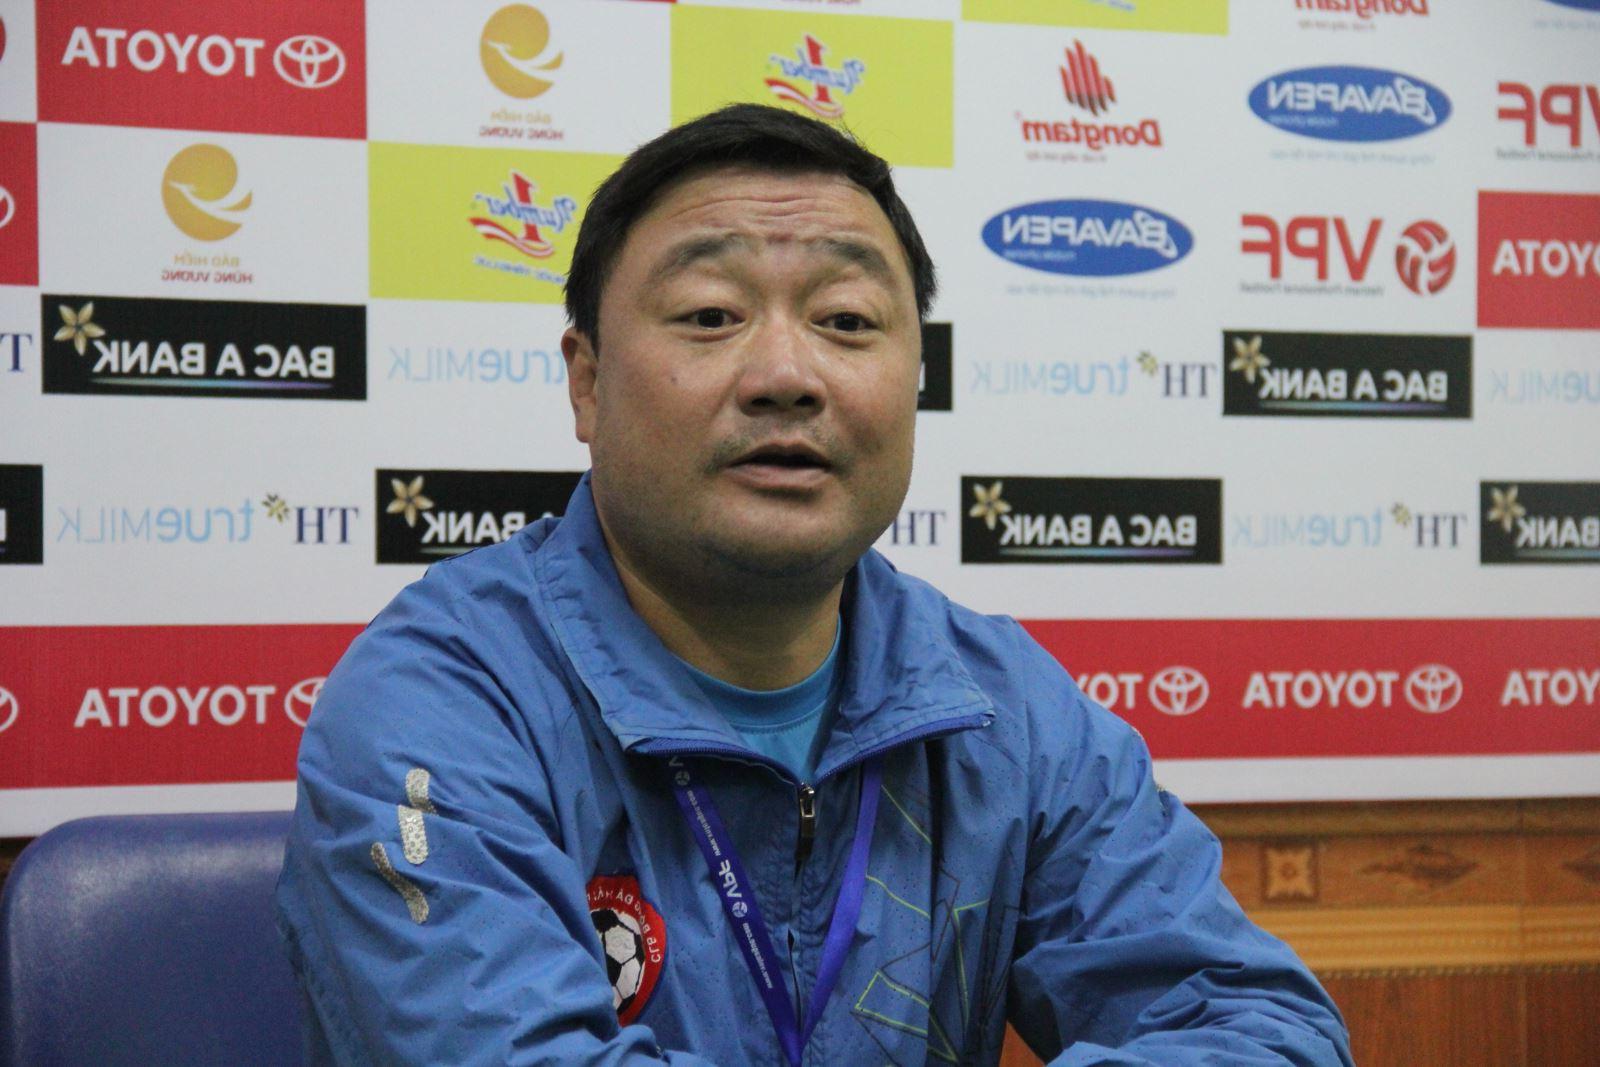 Huấn luyện viên bóng đá Trương Việt Hoàng - người từng ghi dấu ấn với bàn thắng trong trận đấu với đội tuyển Thái Lan ở giải Tiger Cup 98